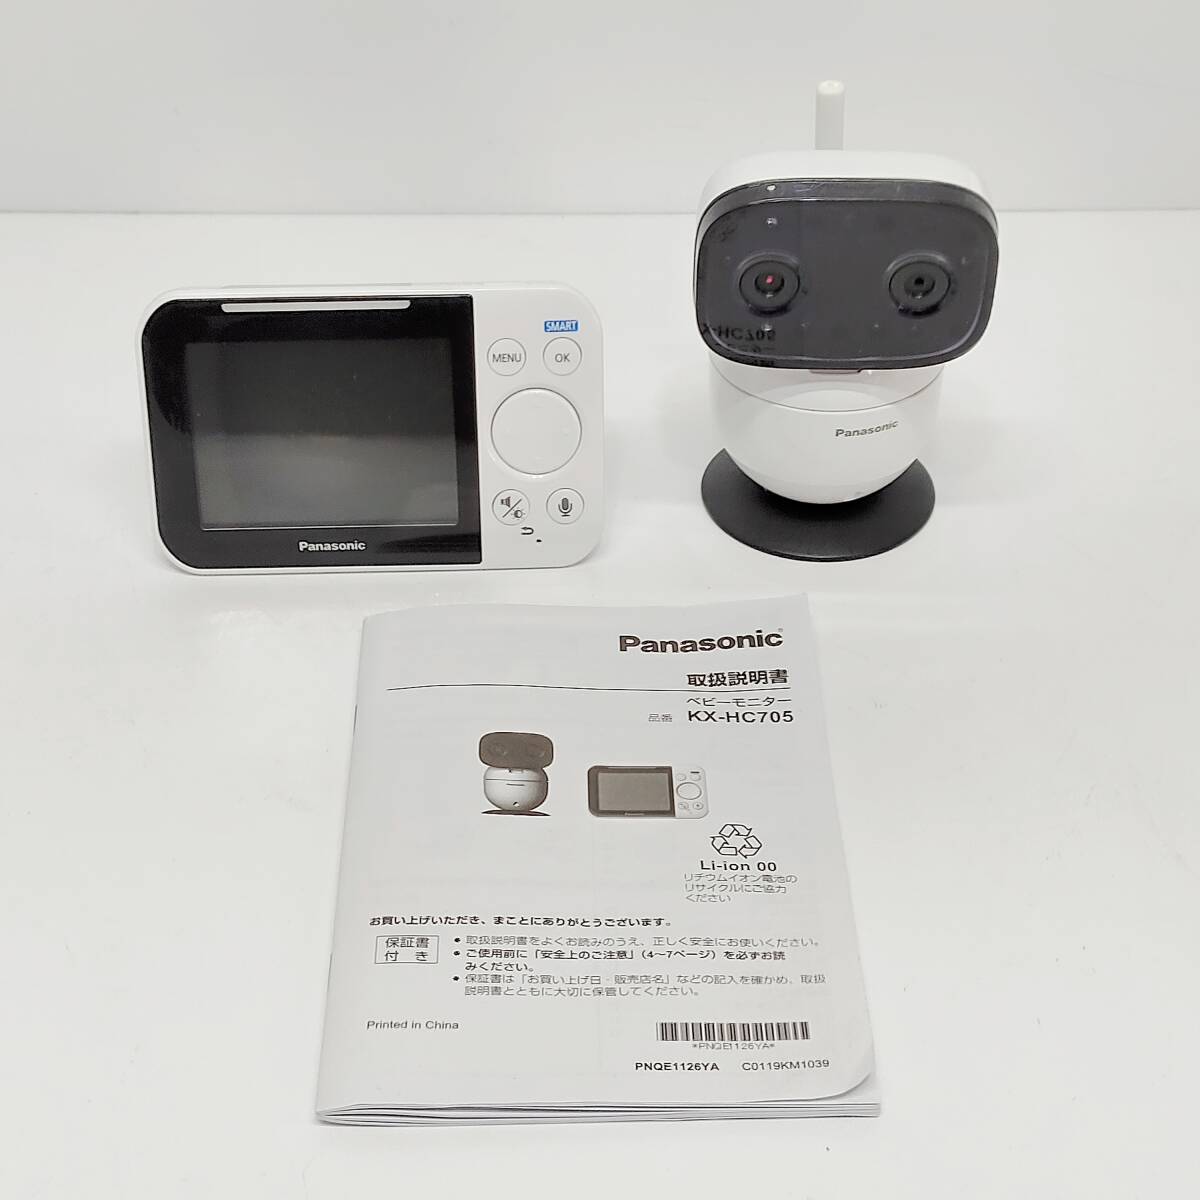 * Panasonic KX-CU705 детский монитор Panasonic беспроводной baby камера .. младенец видеть .. Night режим установка S3001